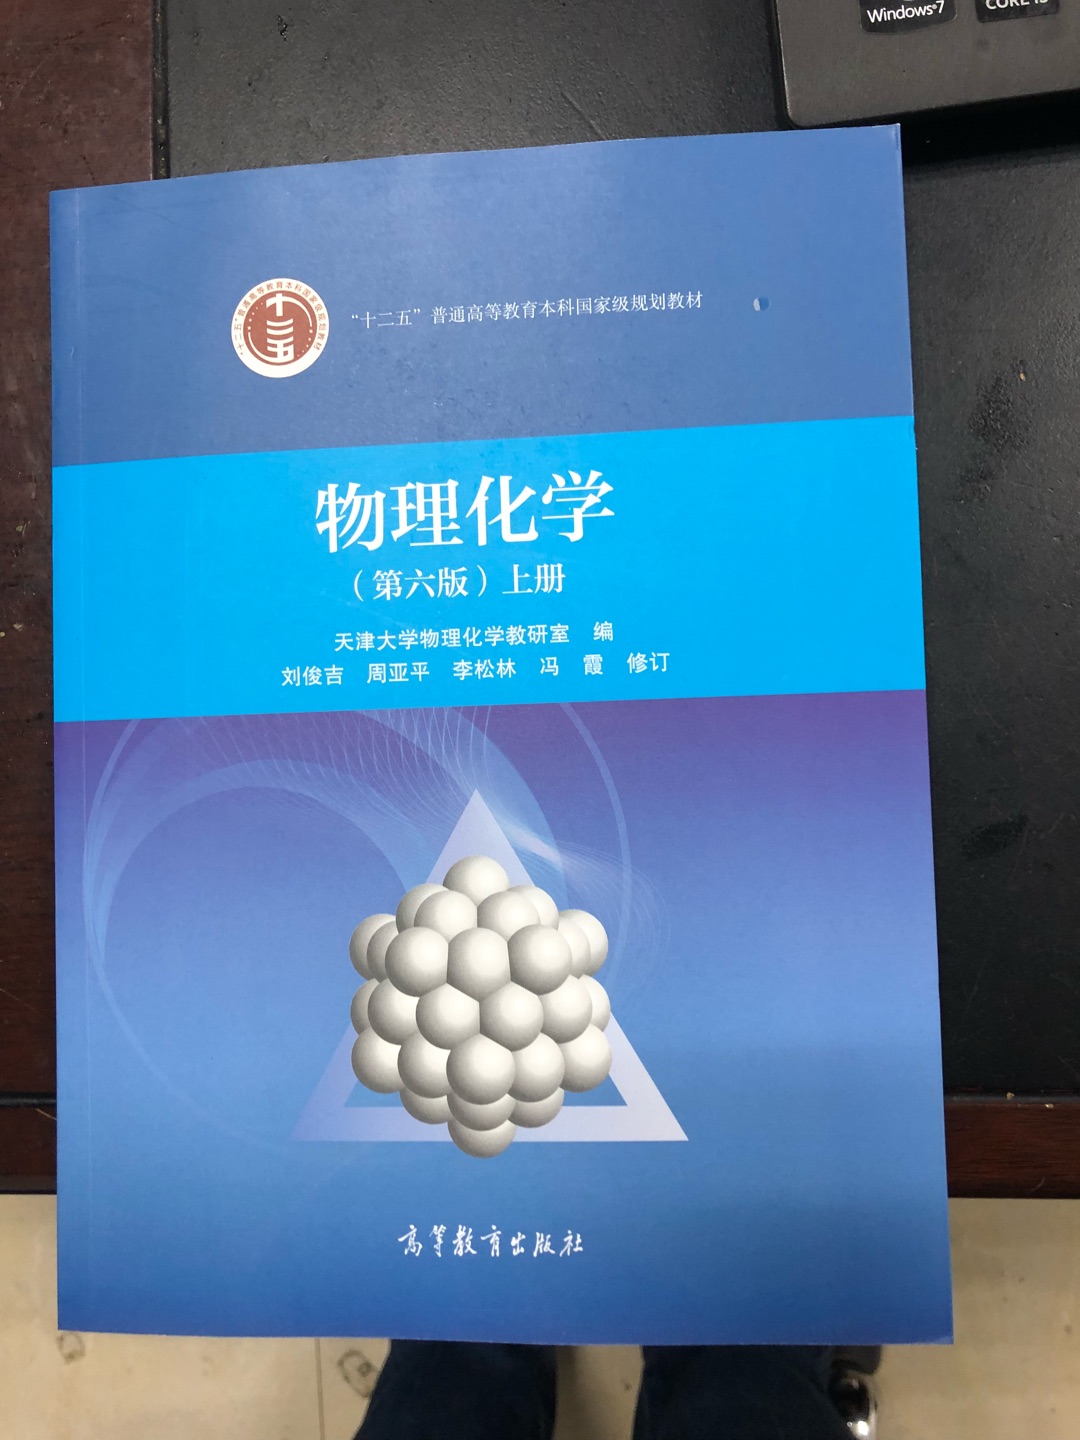 物理化学教科书，天津大学版本，因专业需要，特意买下来阅读。